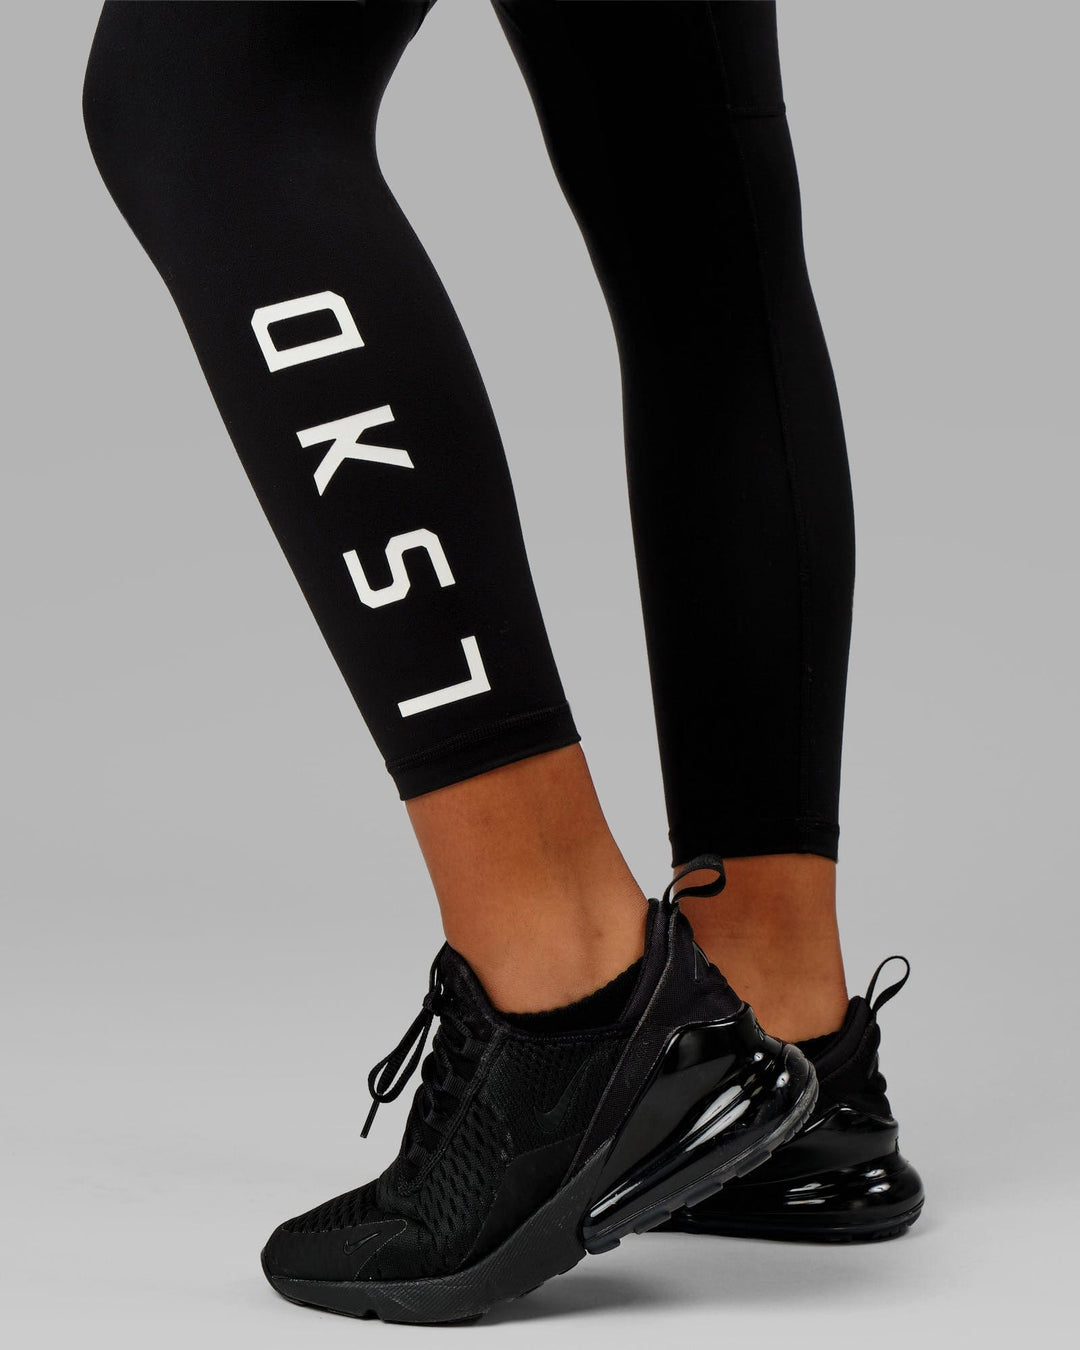 Nike Womens One Icon Clash 7/8 Leggings - Black